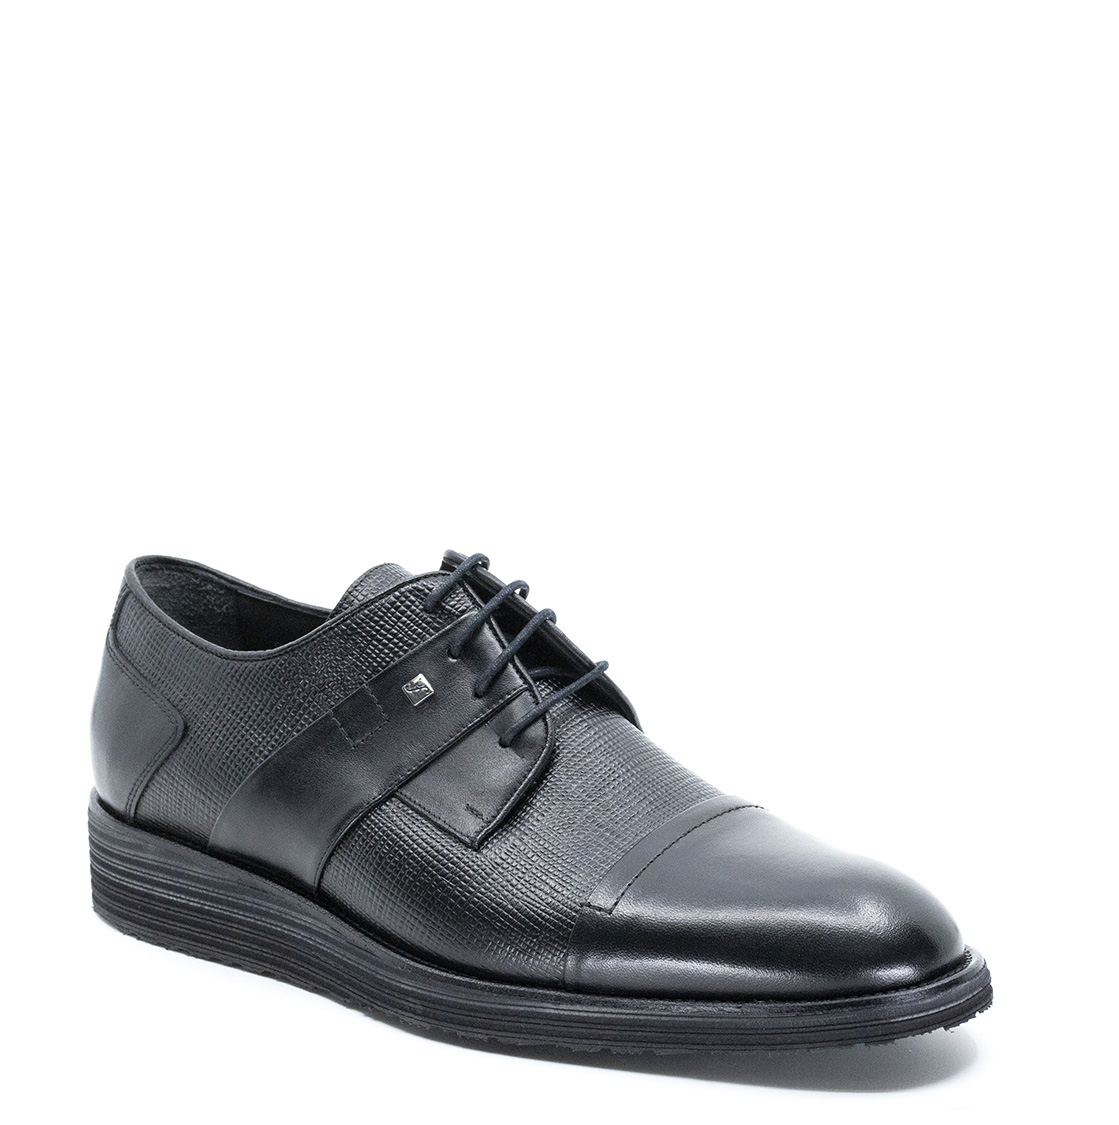 Fosco Hakiki Deri Erkek Ayakkabı, Renk: Siyah, Beden: 39